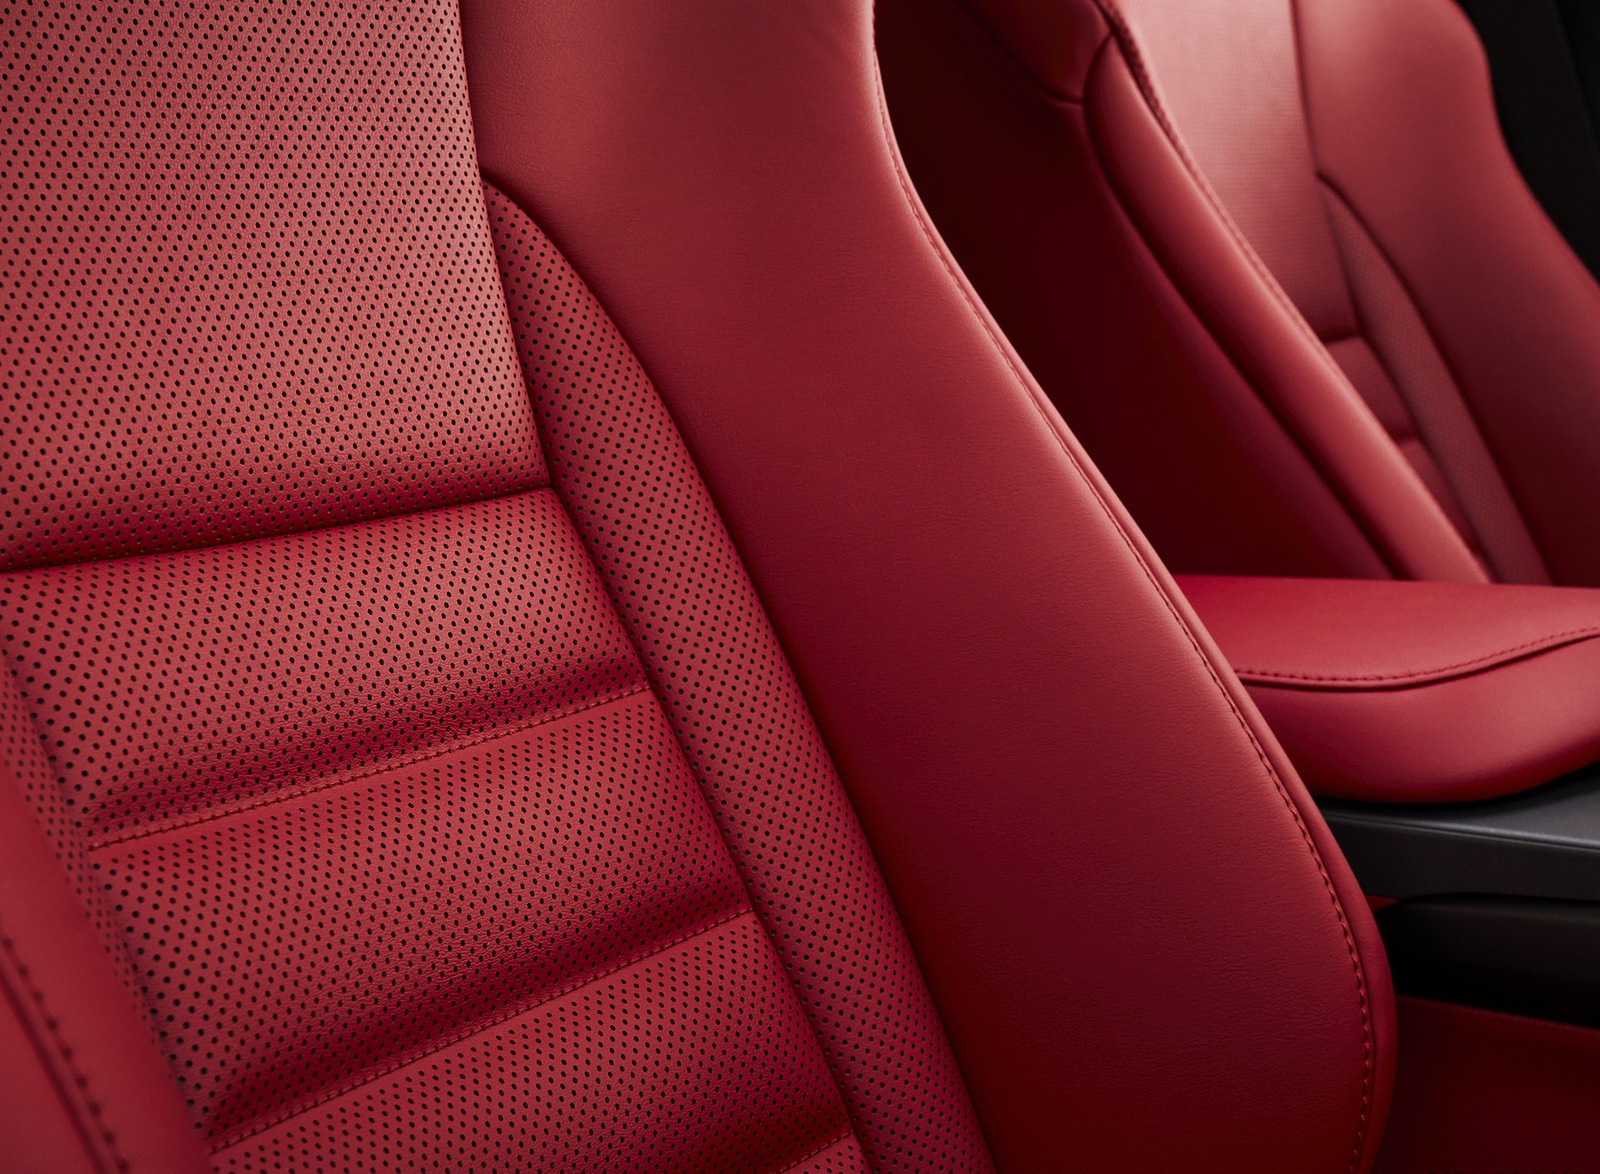 2021 Lexus IS Interior Seats Wallpapers #23 of 30